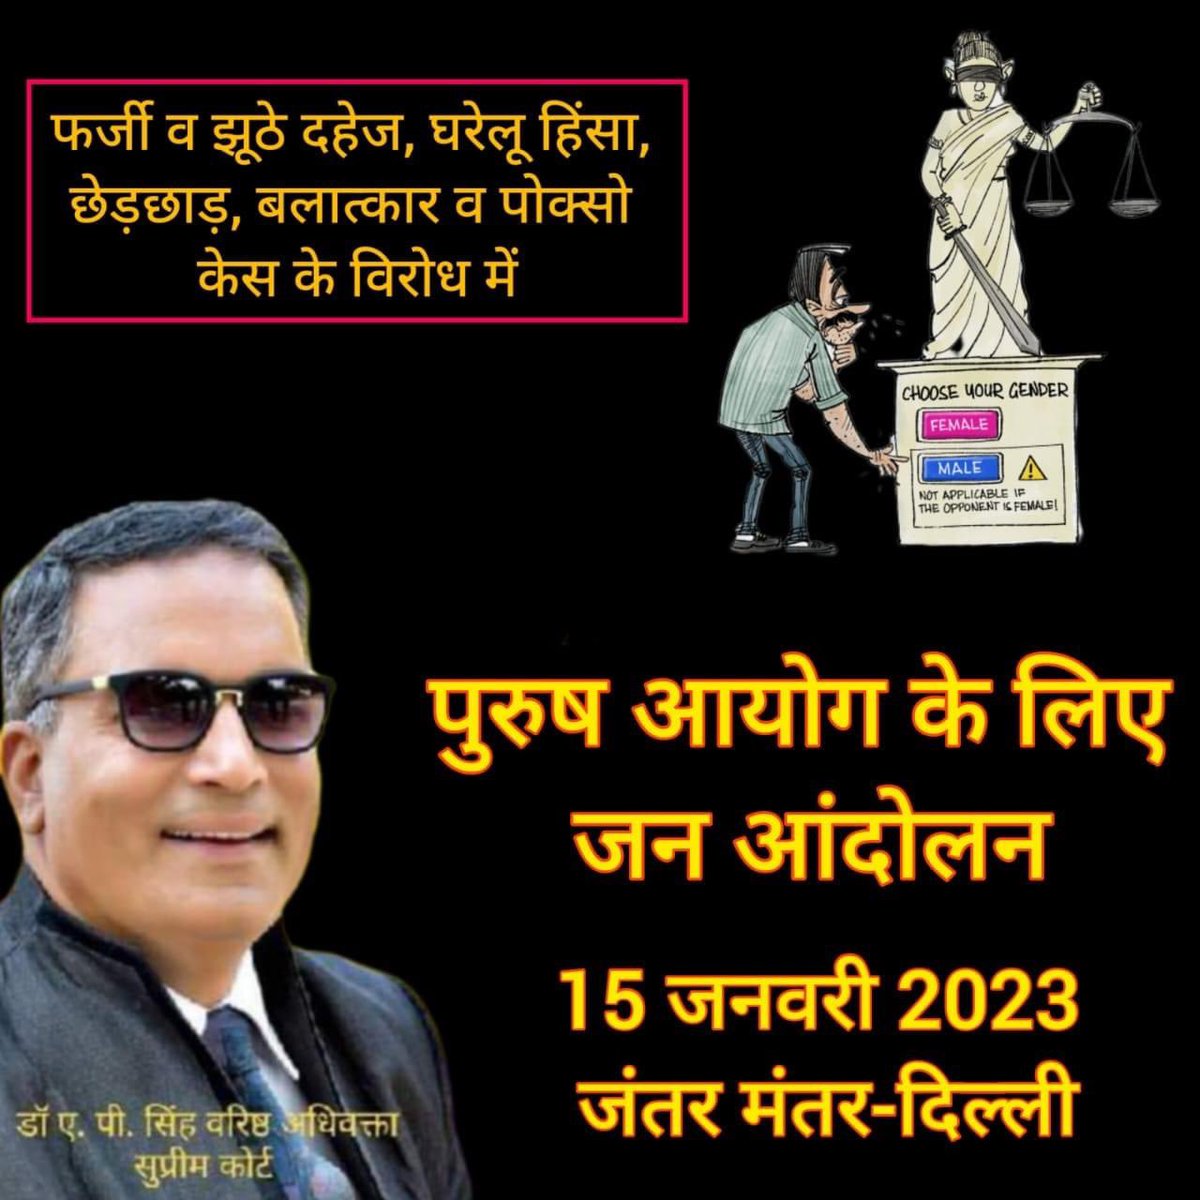 शौक नही मजबूरी है, पुरुष आयोग ज़रूरी है।
15-जनवरी-2023, सुबह 10 बजे, जन्तर मन्तर, दिल्ली।
मुख्य अतिथि: श्री ए पी सिंह जी (वरिष्ठ अधिवक्ता, उच्चतम न्यायालय)
Dr A P Singh, Lawyer 
Apsingh Adv 
A P Singh Adv 
Prakash NgoOffice 

#purushaayog 
#FeminismIsCancer 
#GenderBiasedLaws